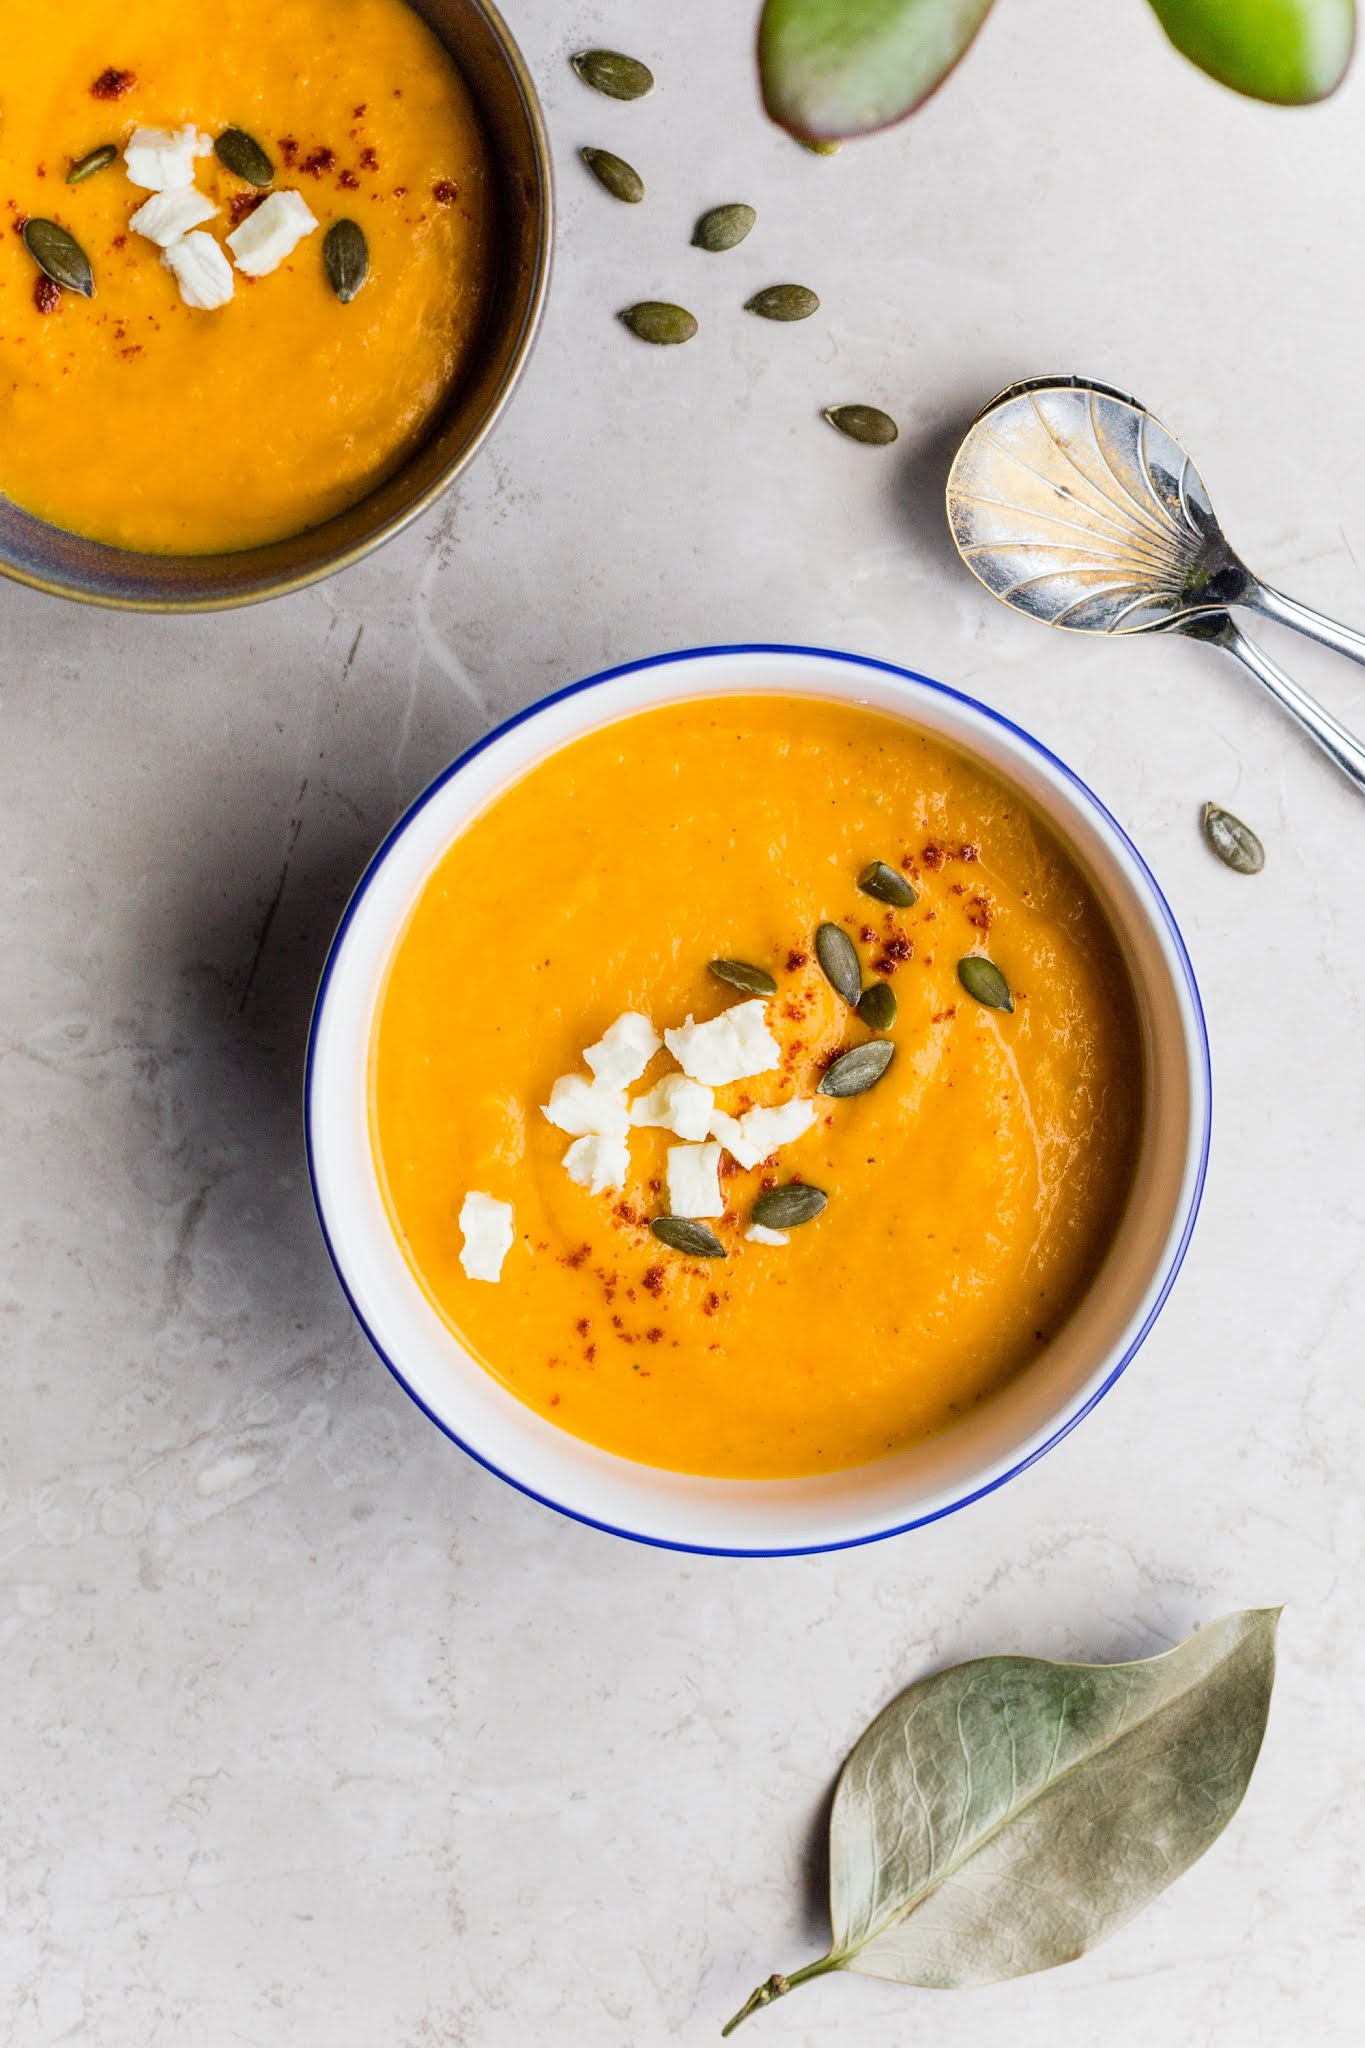 Jesień sprzyja gotowaniu potraw sezonowych, w śród ulubieńców najczęściej znajdziemy zupę dyniową